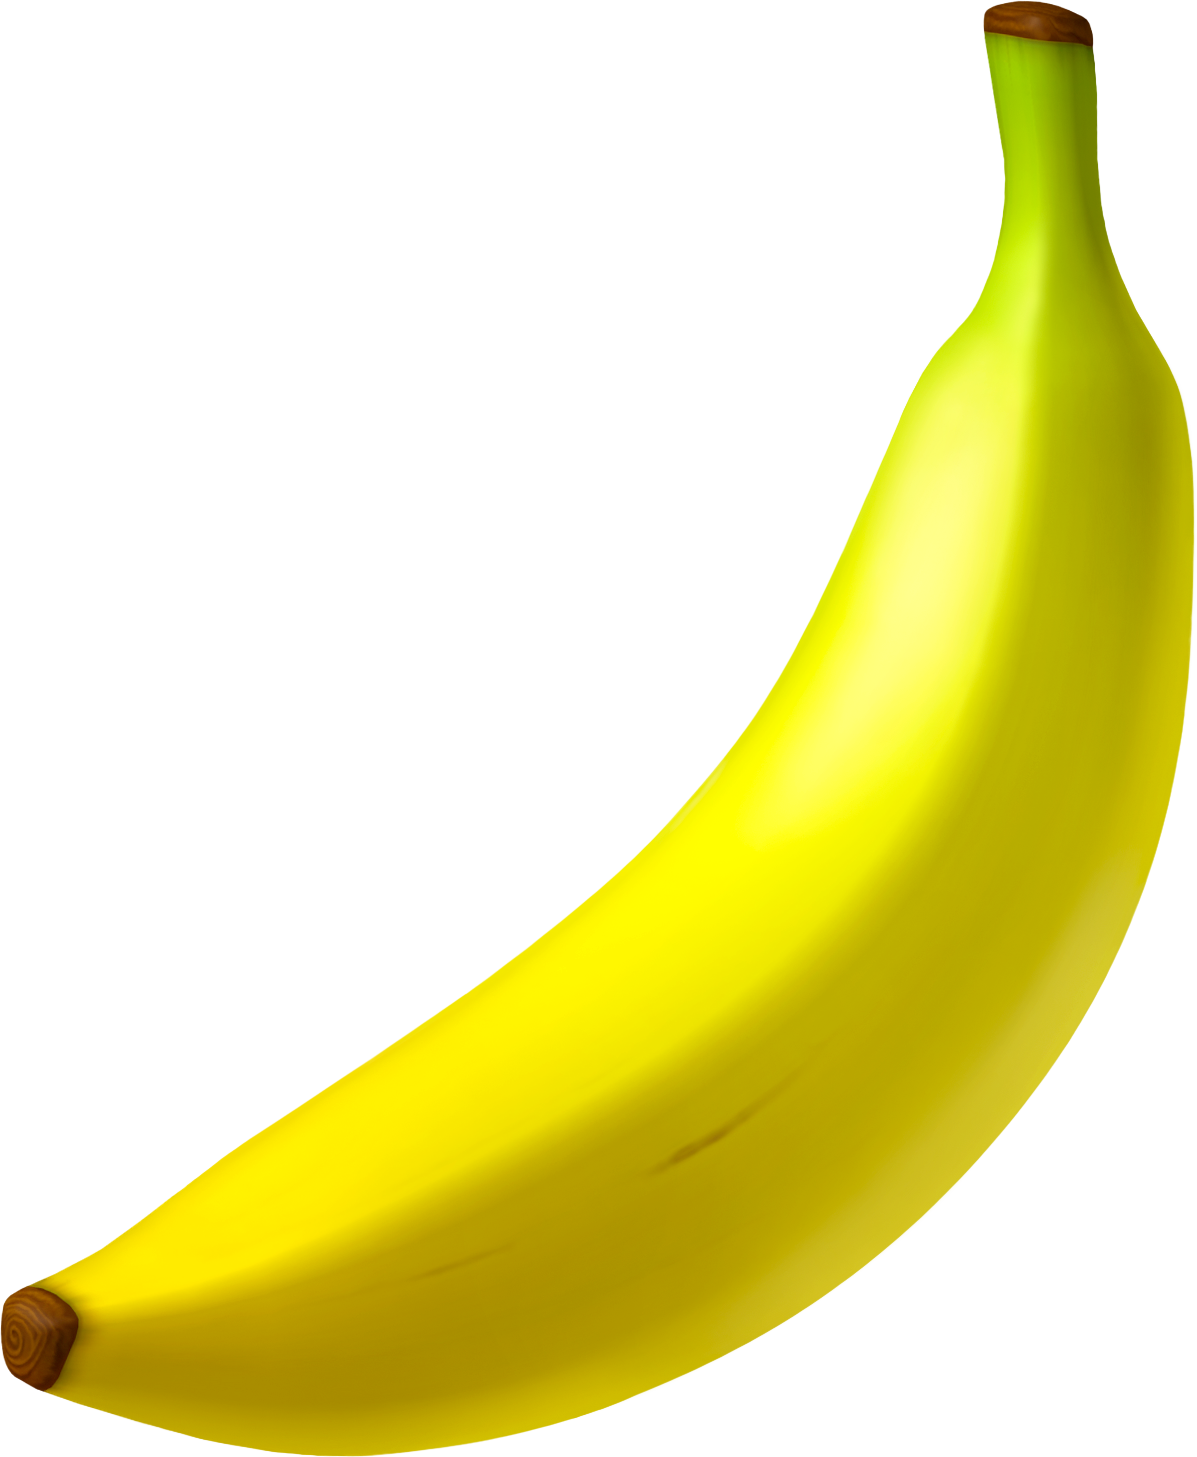 Banana - Super Mario Wiki, the Mario encyclopedia